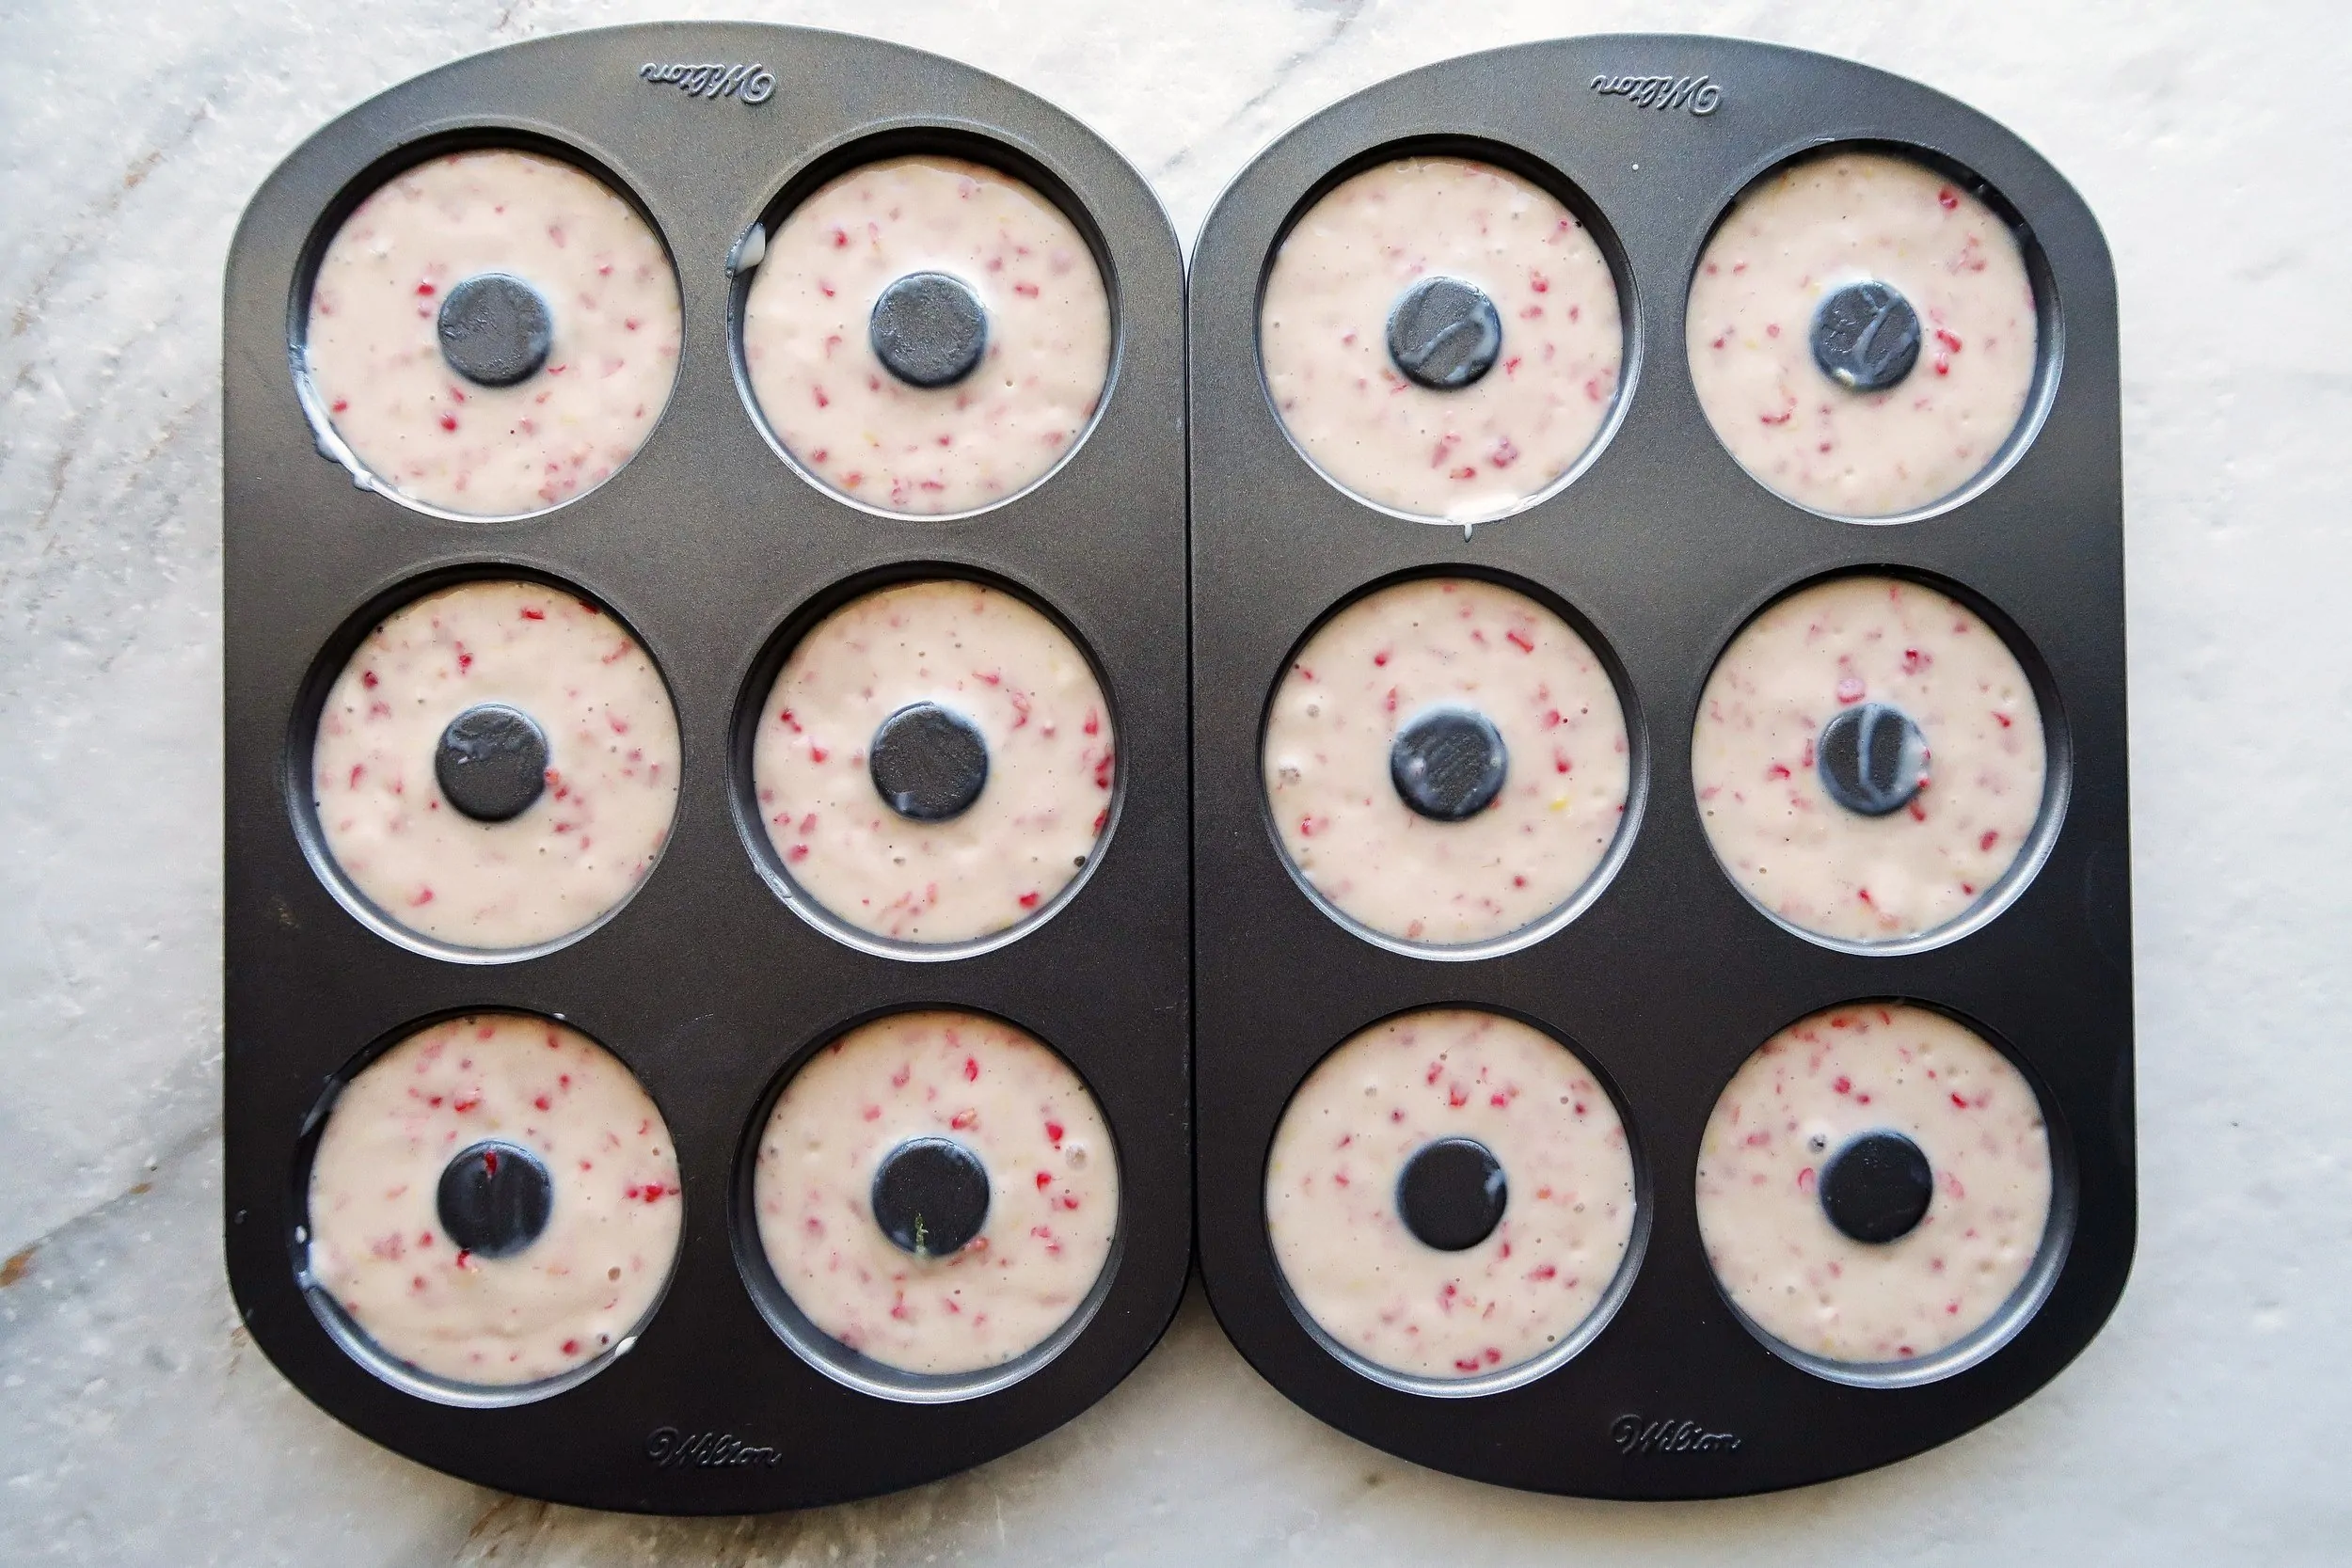 Donut pans filled with raspberry lemon donut batter.